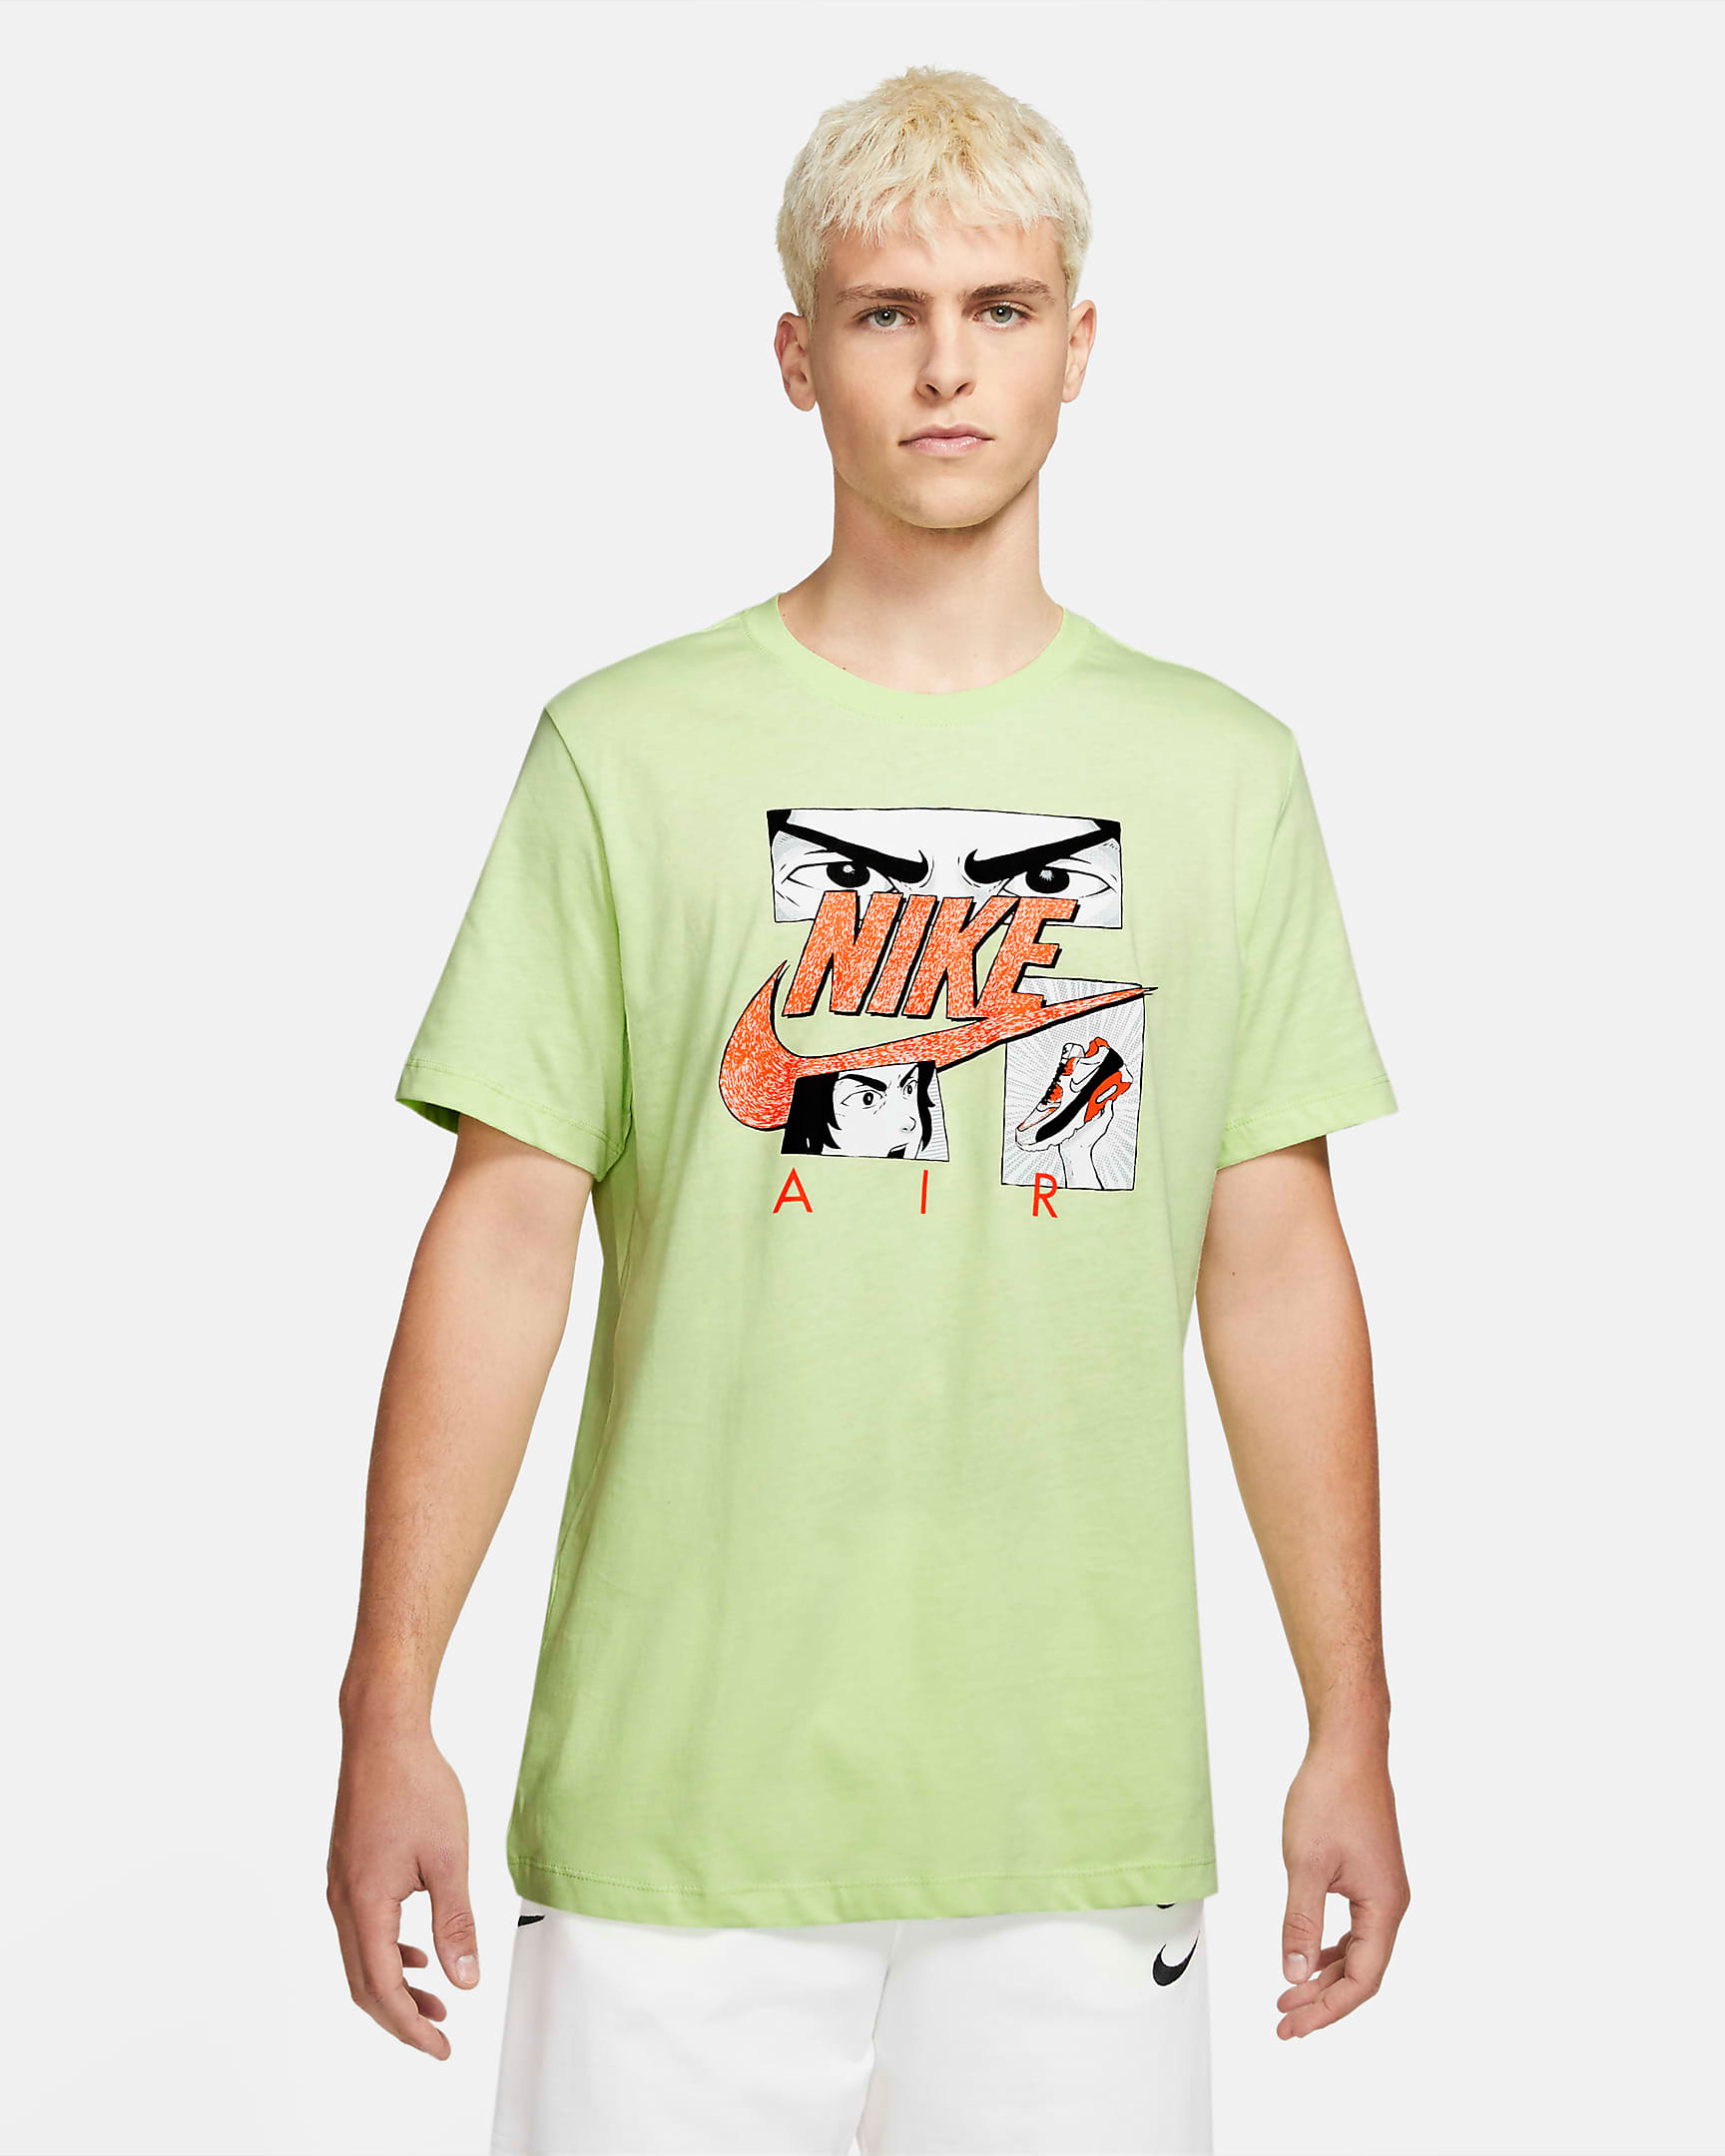 nike-light-liquid-lime-air-max-tee-shirt